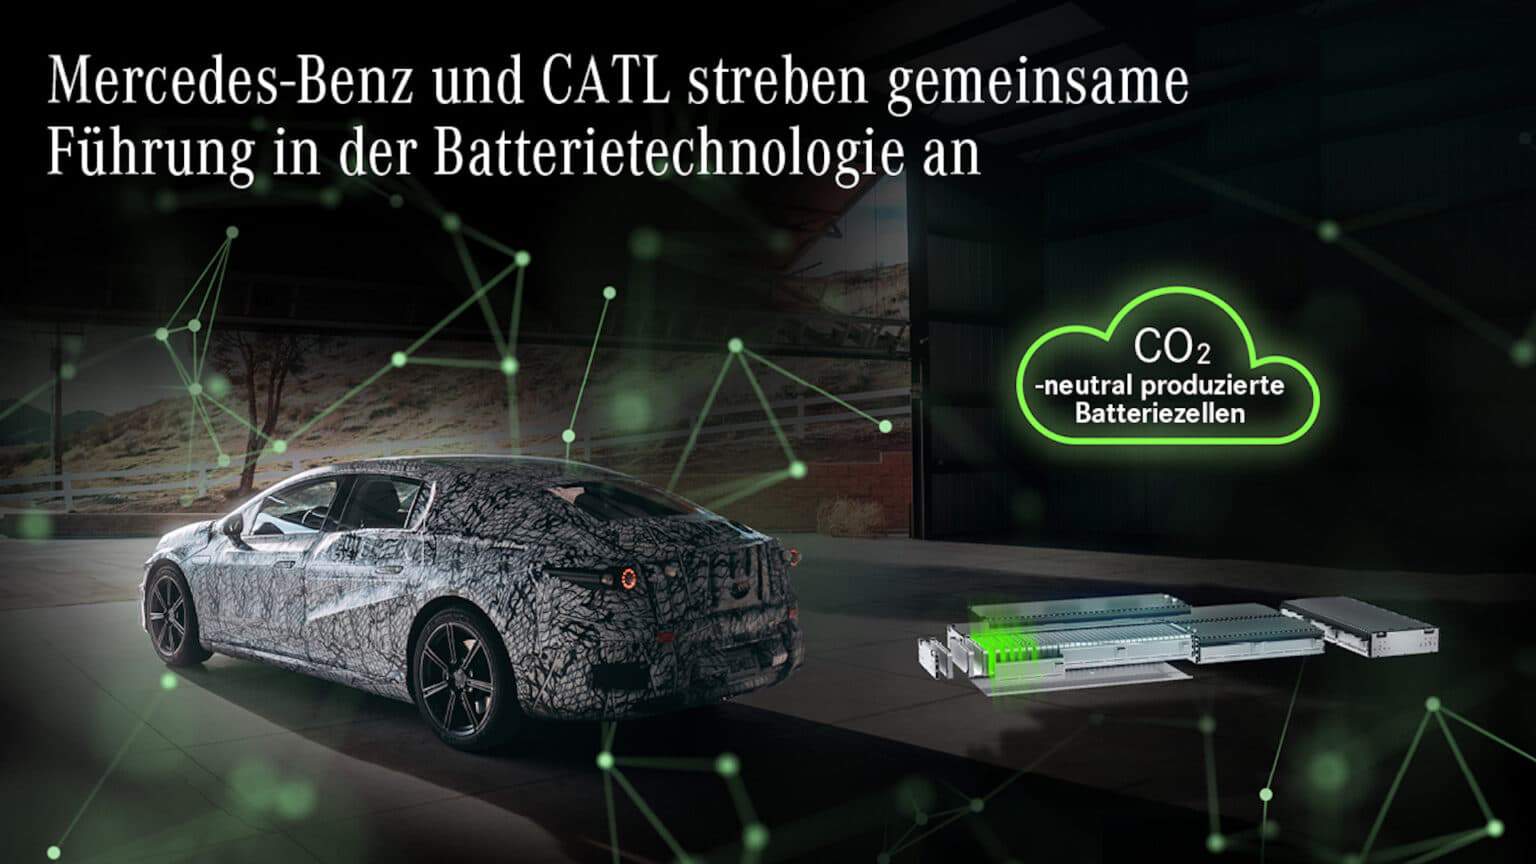 Mercedes-Benz und CATL strebe n gemeinsame Führung in der Batterietechnologie an